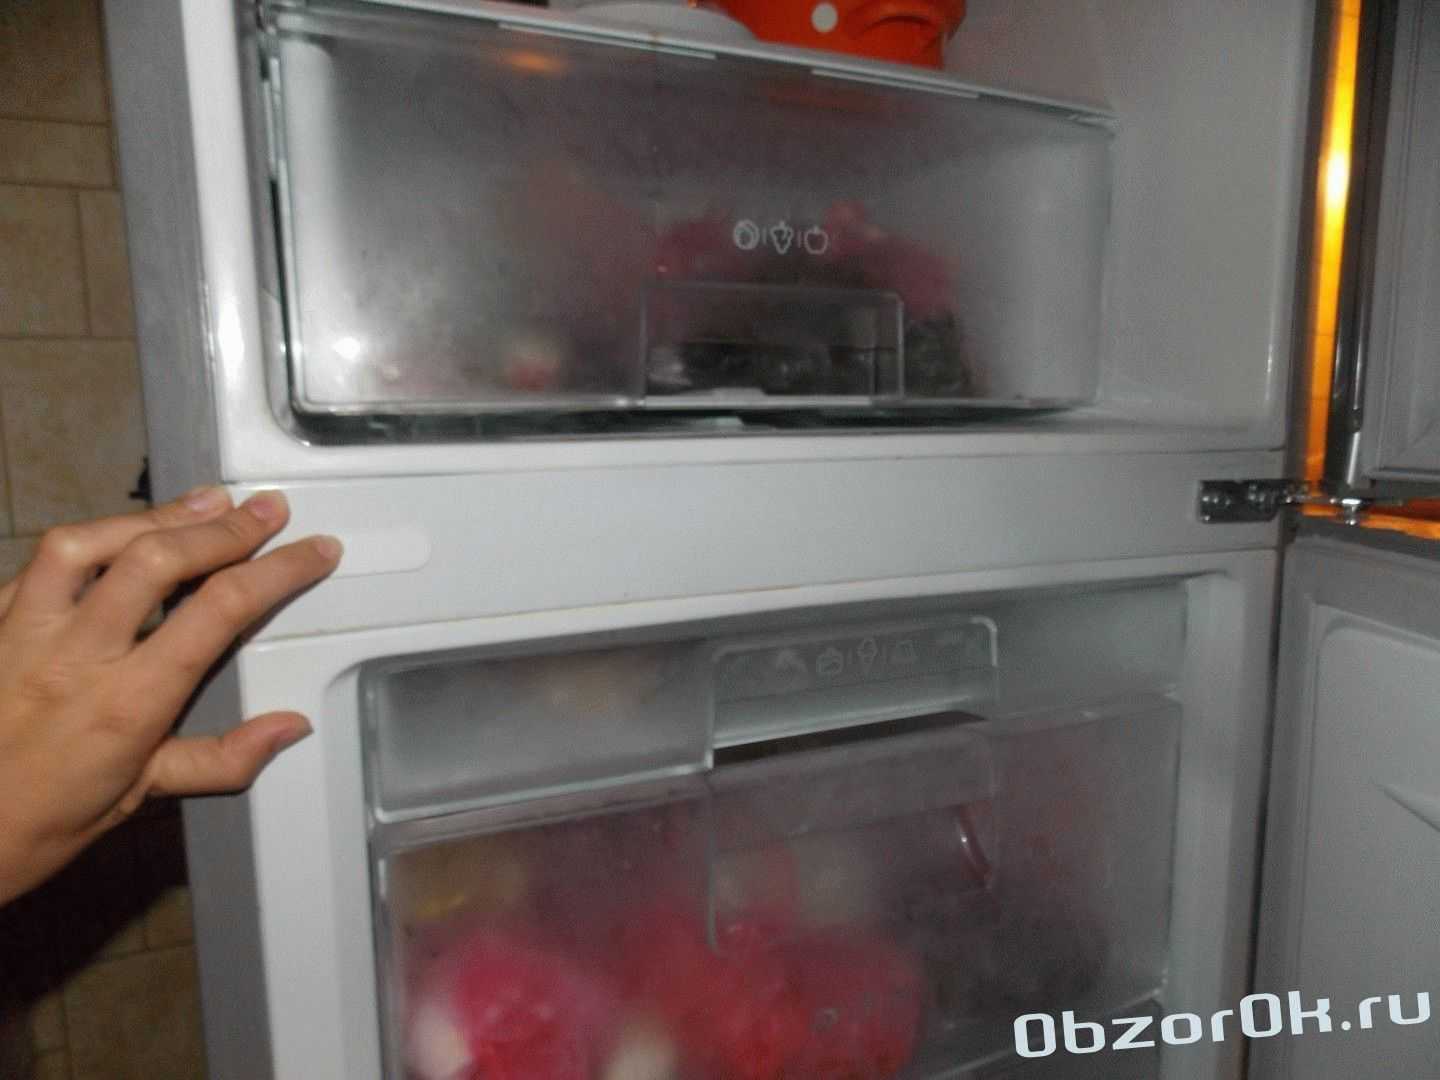 Сильно нагревается холодильник. Перегрелся холодильник. Холодильник перемораживает. Холодильники между морозильником и холодильником. Холодильник нагревается.